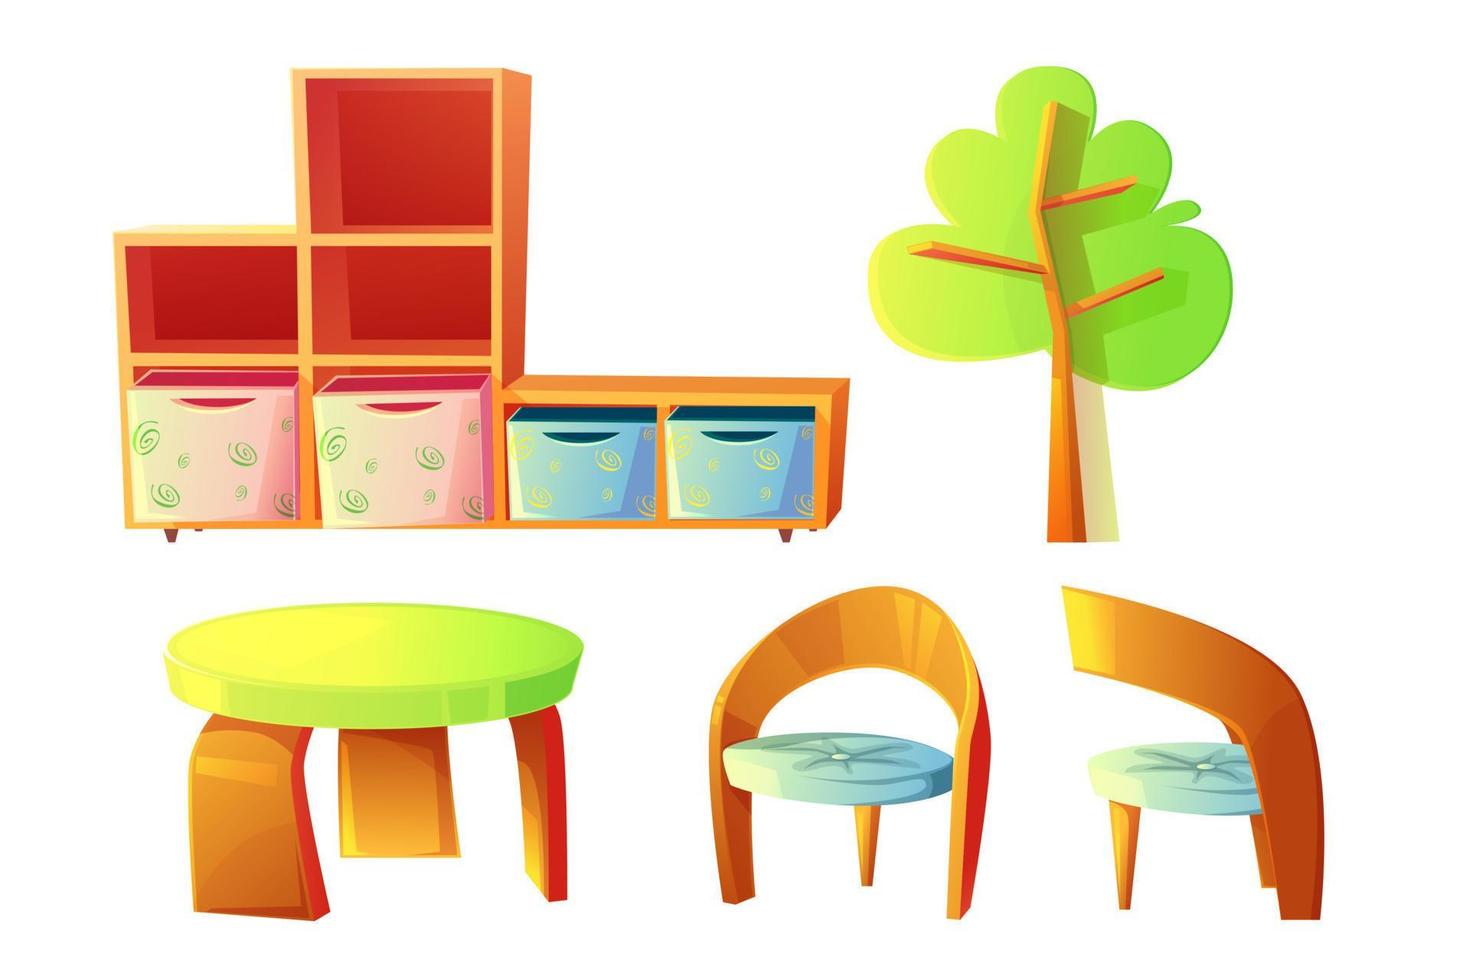 kleuterschool meubilair voor kinderen klasse kamer vector